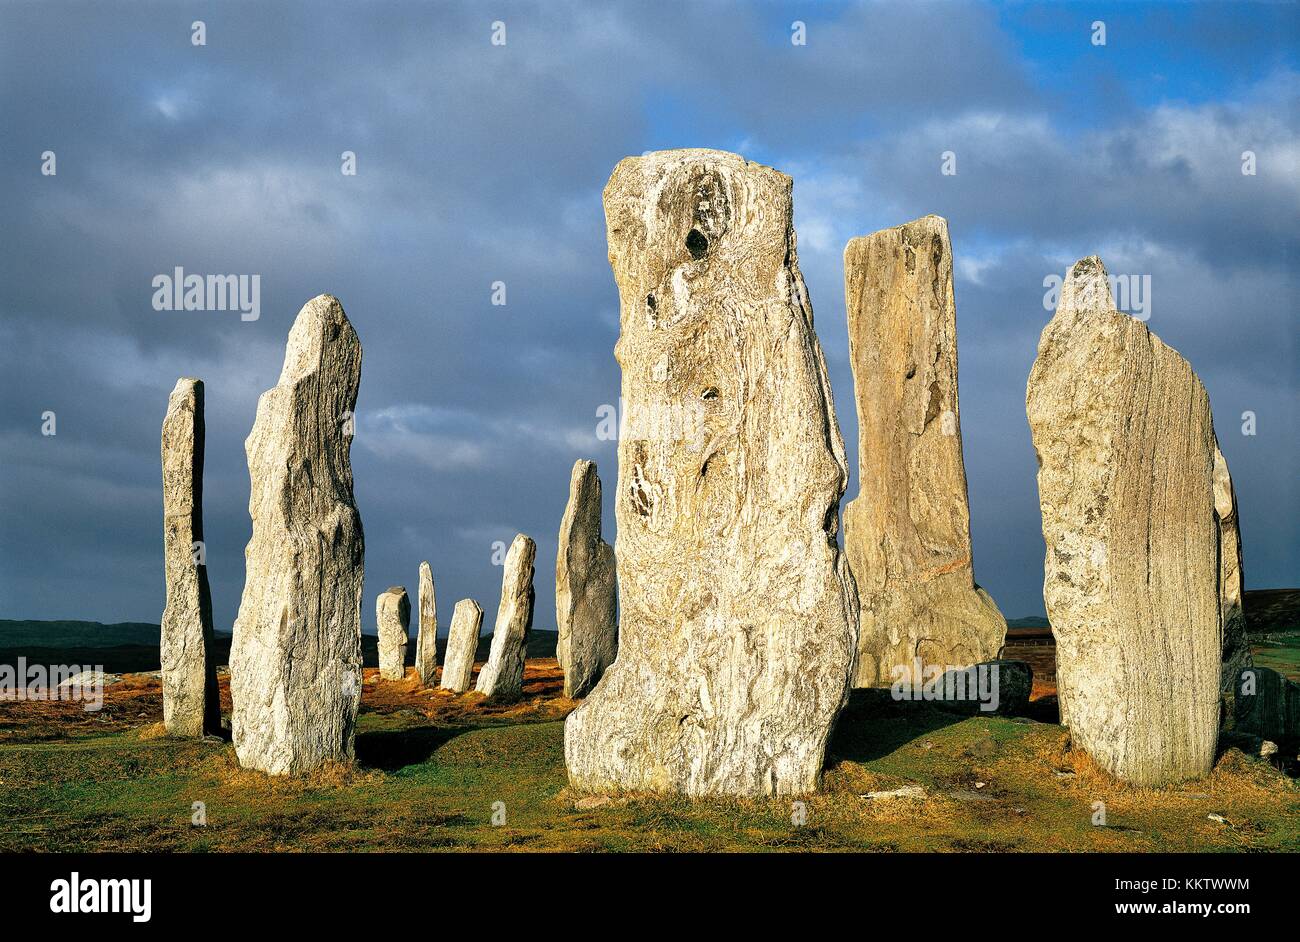 Prähistorischer Steinkreis Callanish ist über 5000 Jahre alt. Schottischen Hebriden Insel Lewis. Mittelstein rund um Bestattung cist Stockfoto